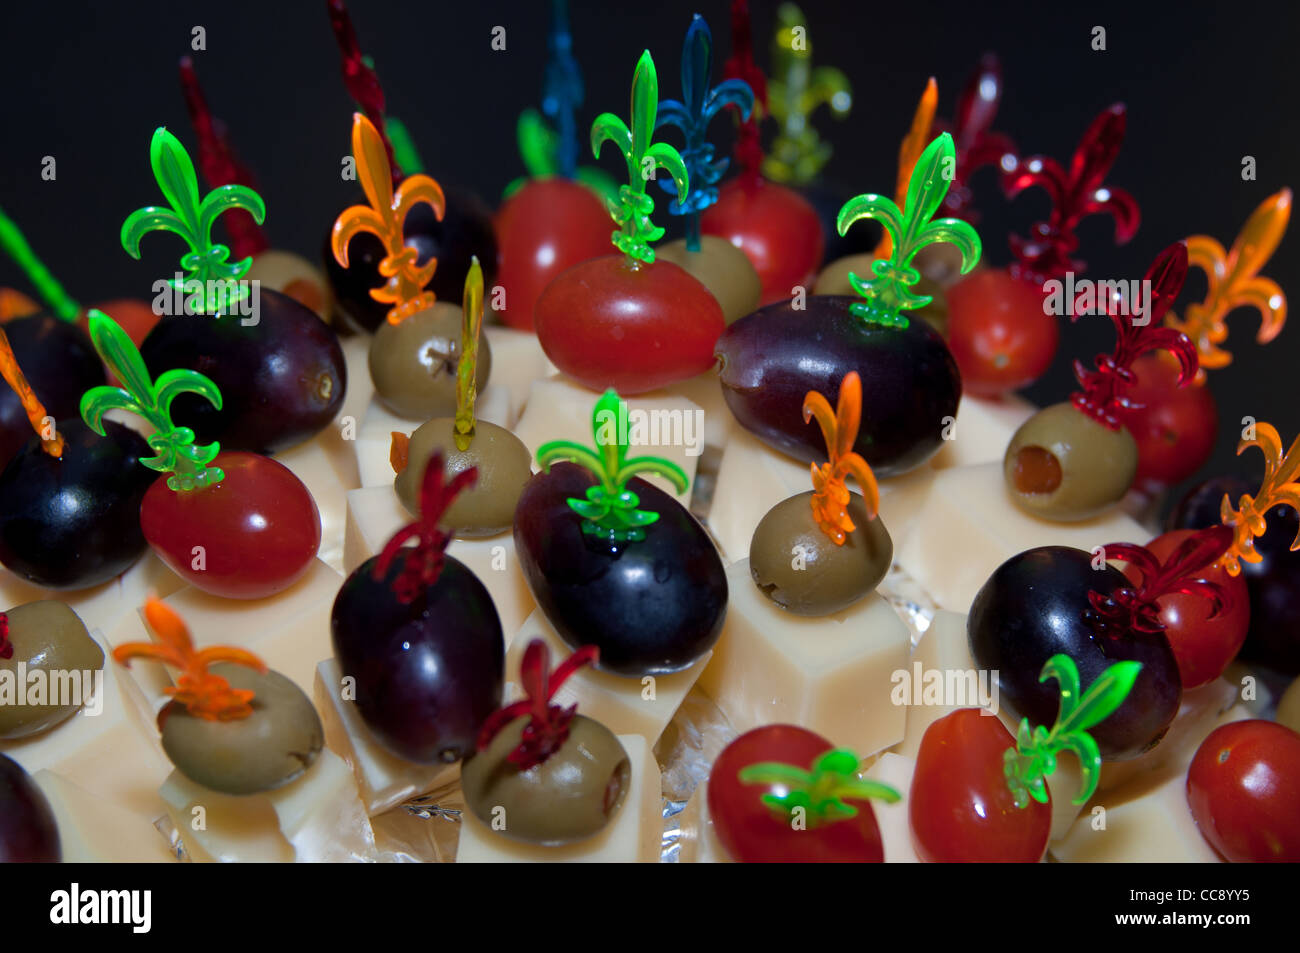 Igel aus Stöcken mit leckerem Essen - Käse, Oliven, Tomaten, Weintrauben  hergestellt Stockfotografie - Alamy